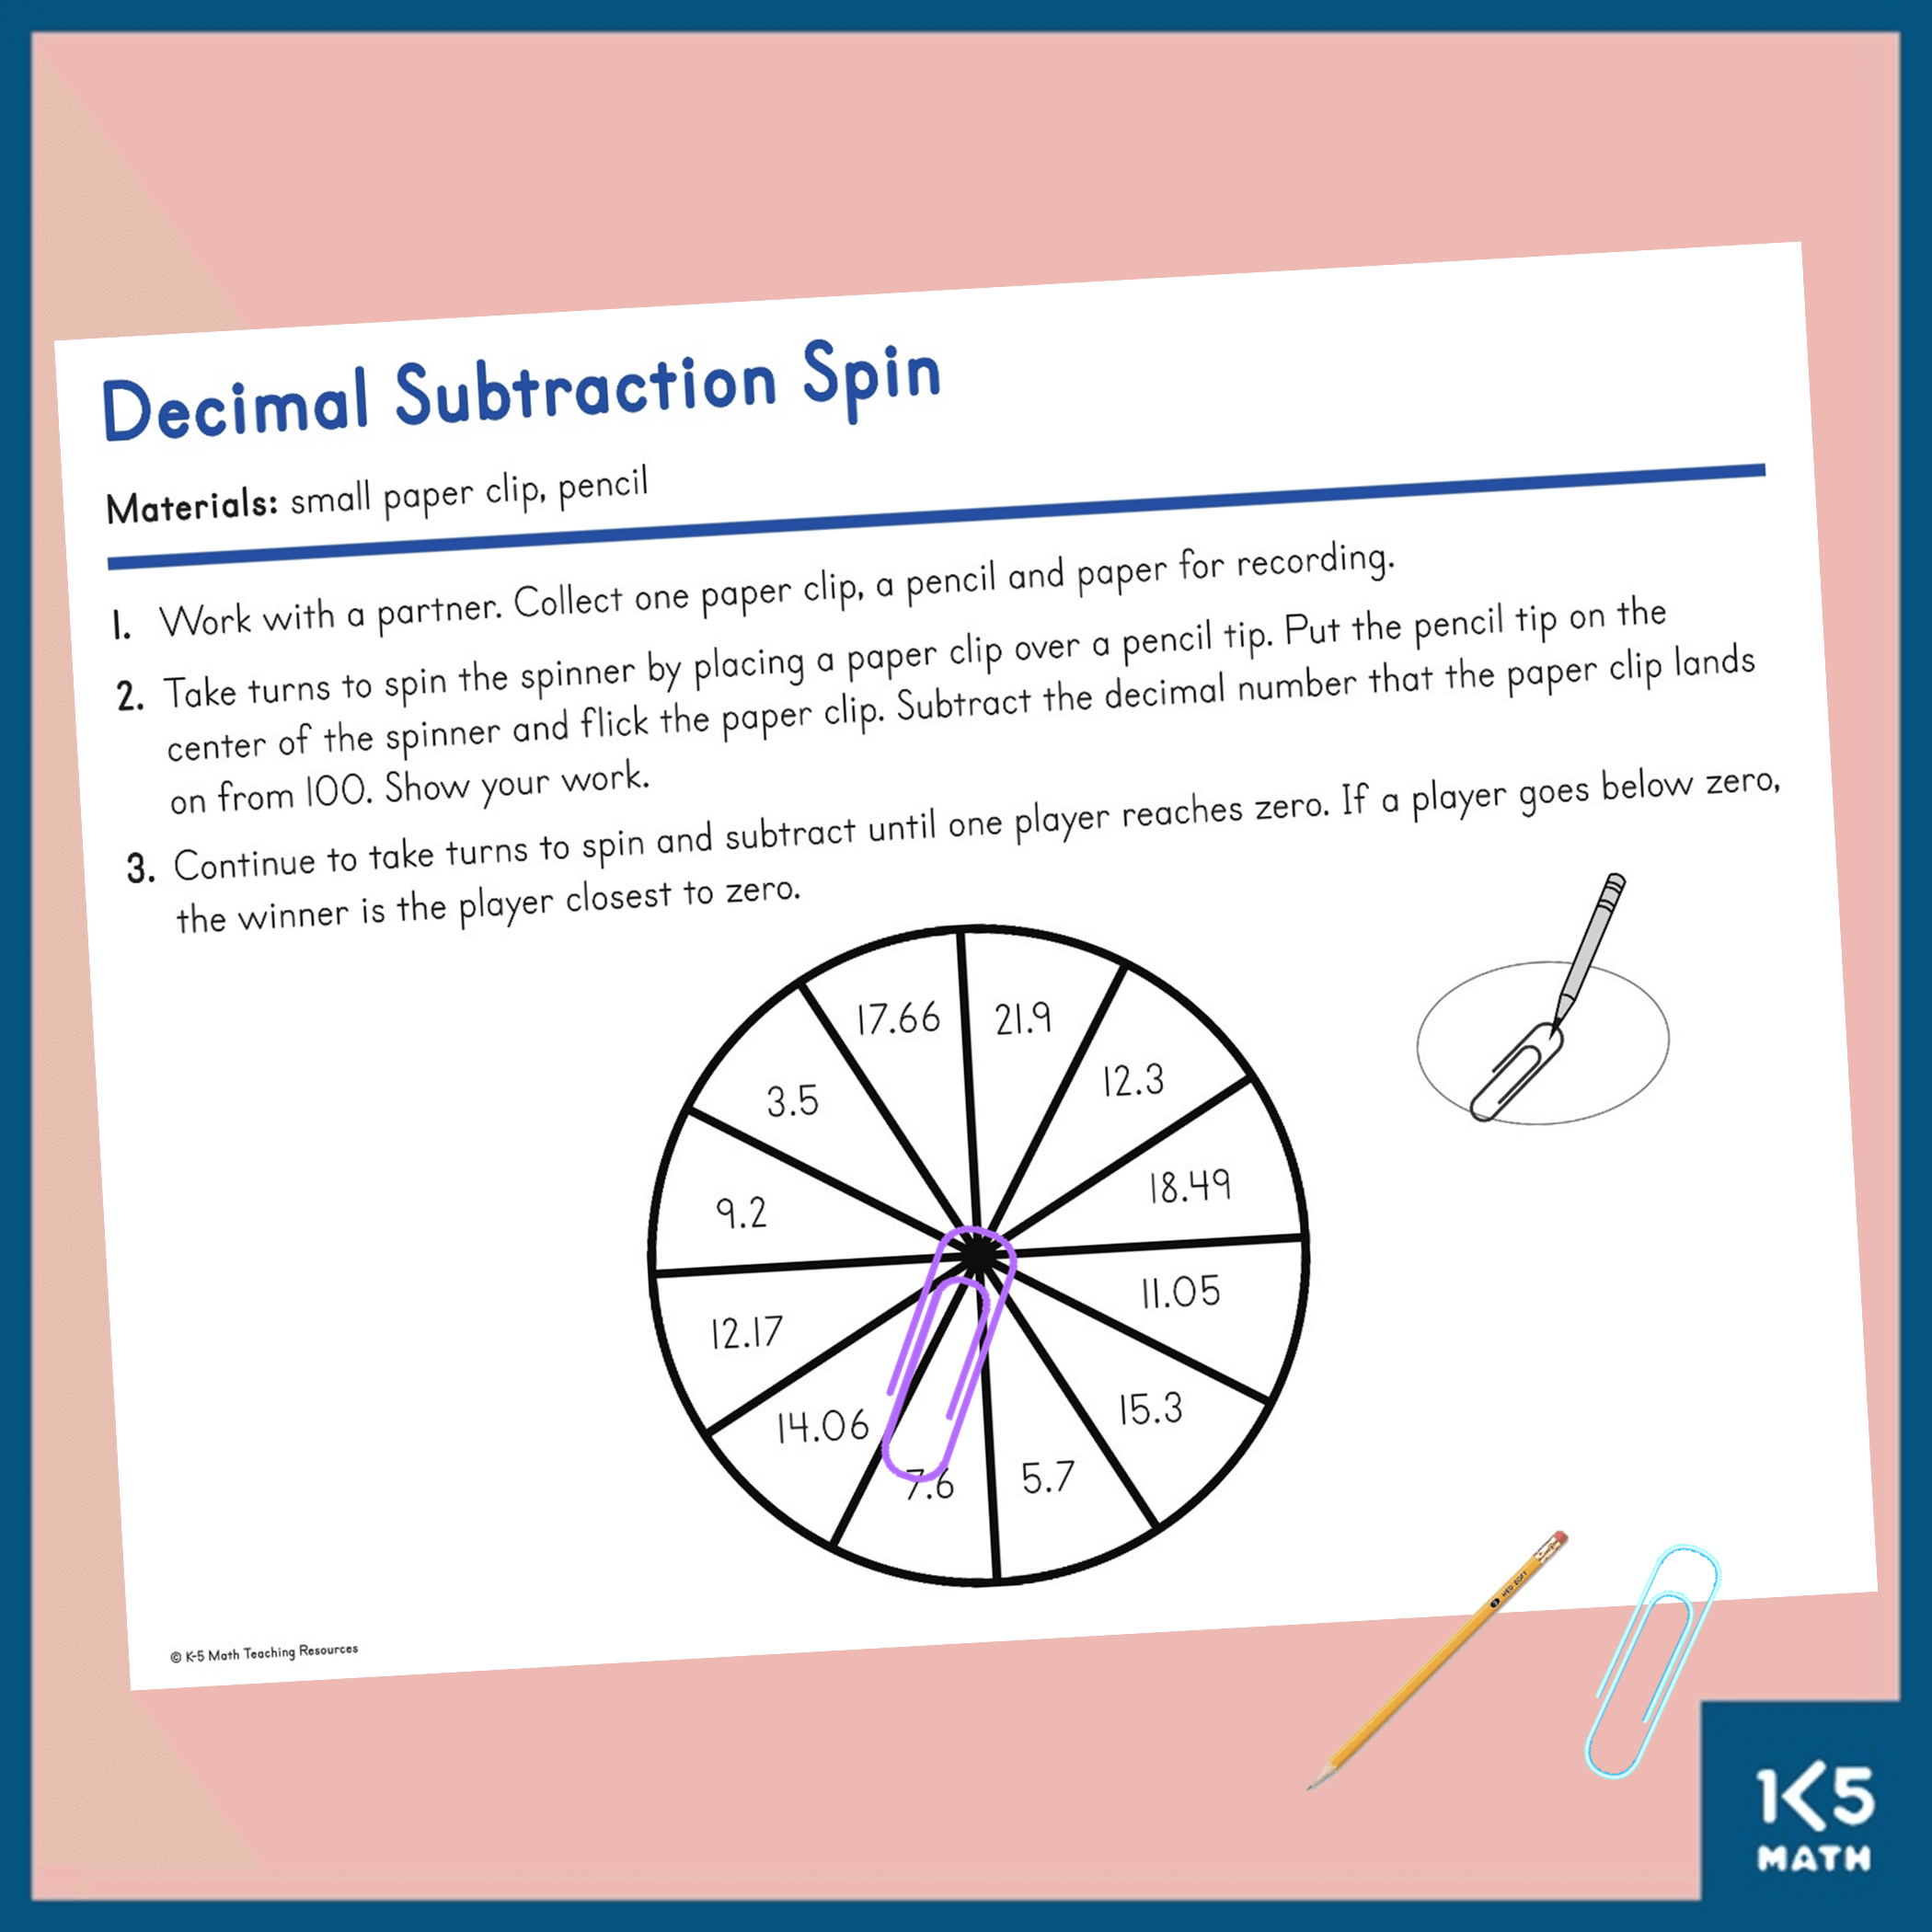 Decimal Subtraction Spin